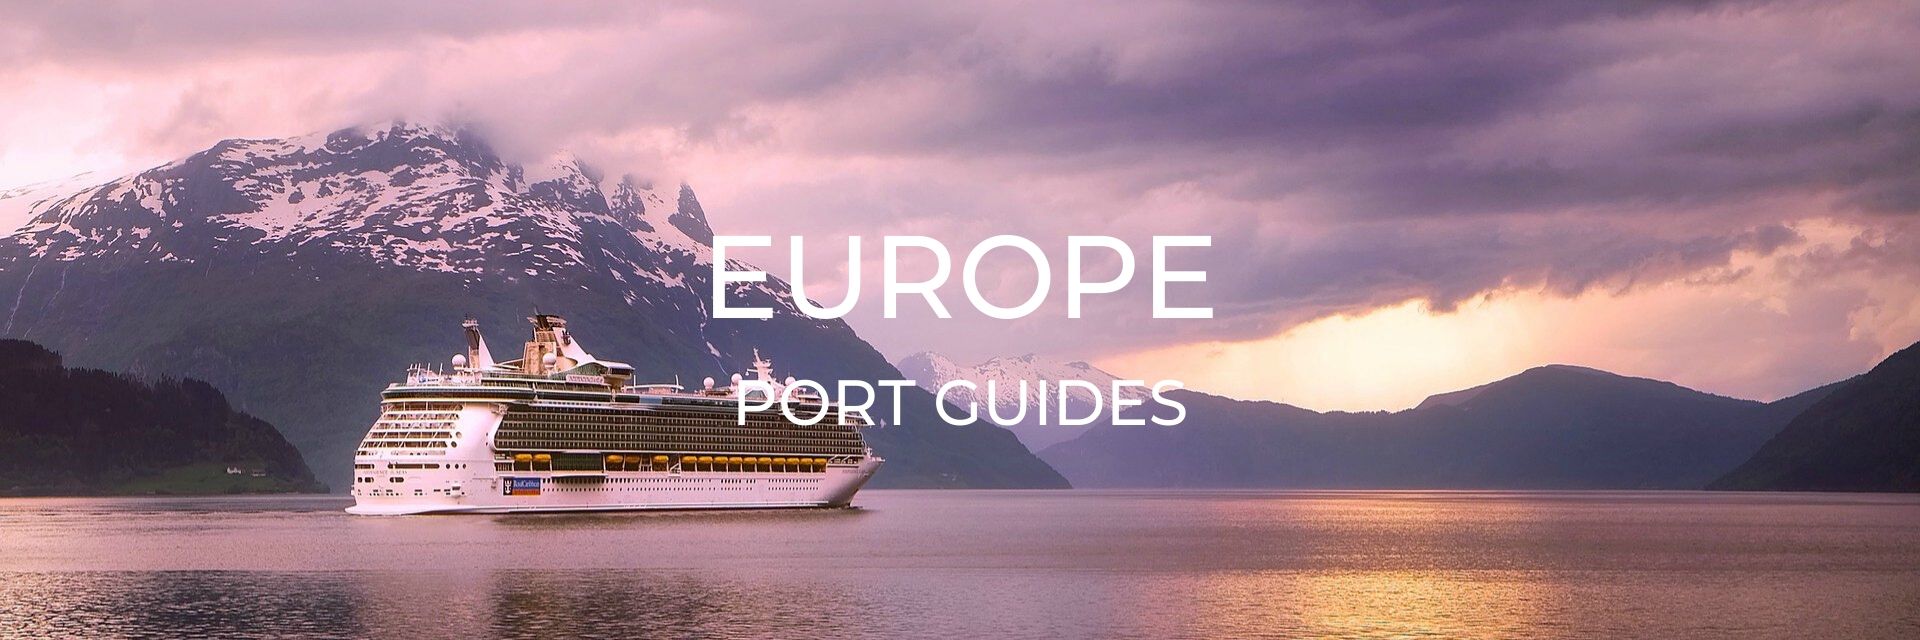 Europe Port Guide Page Desktop Header